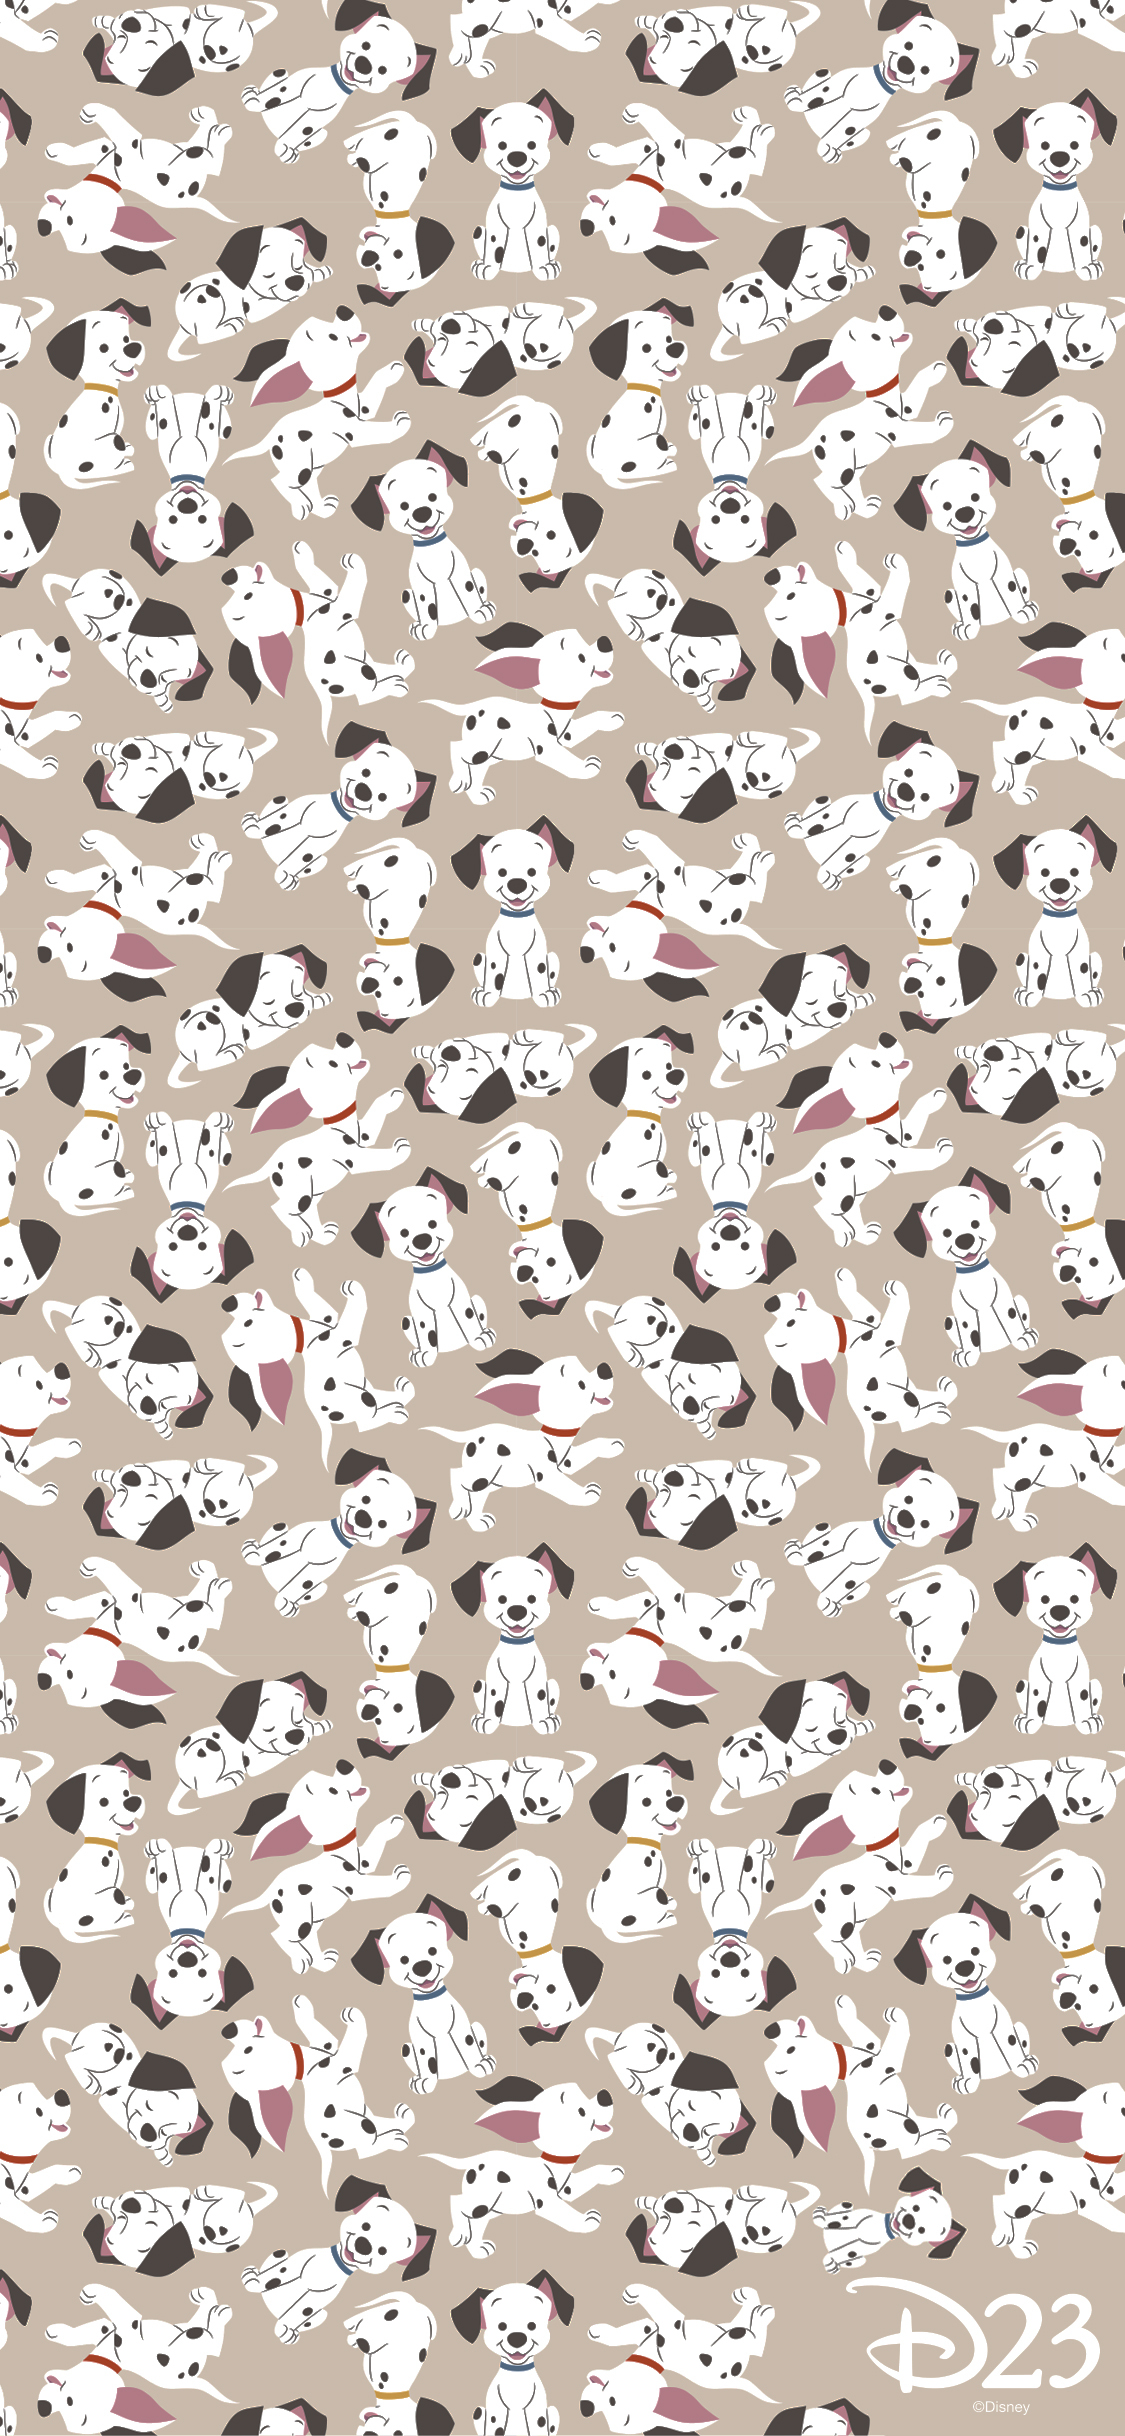 101 dalmatians disney wallpaper